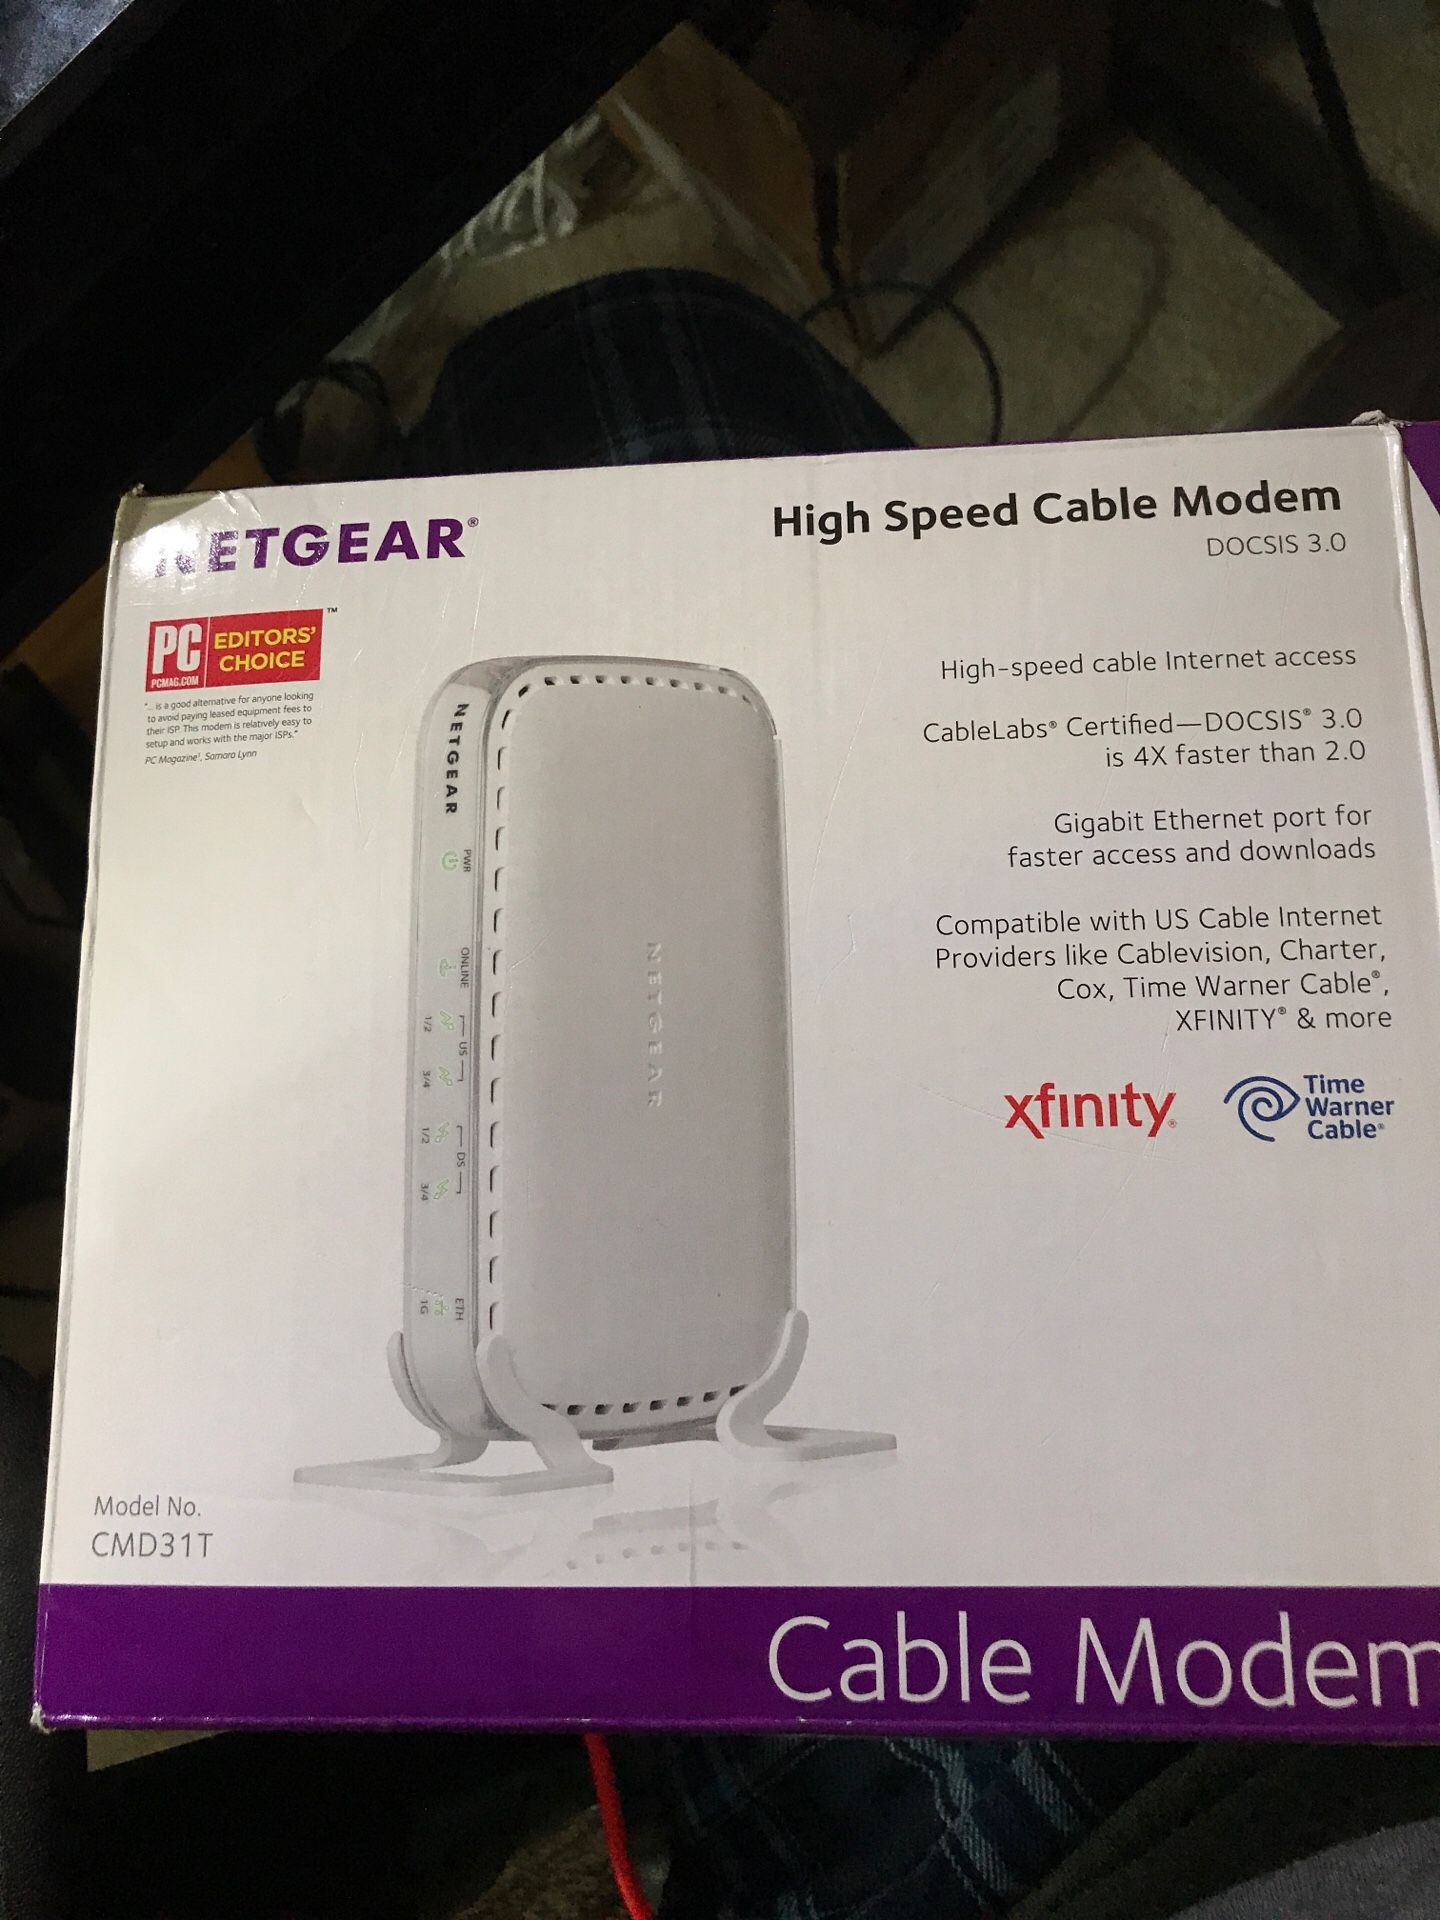 Netgear Cable Modem docsis 3.0